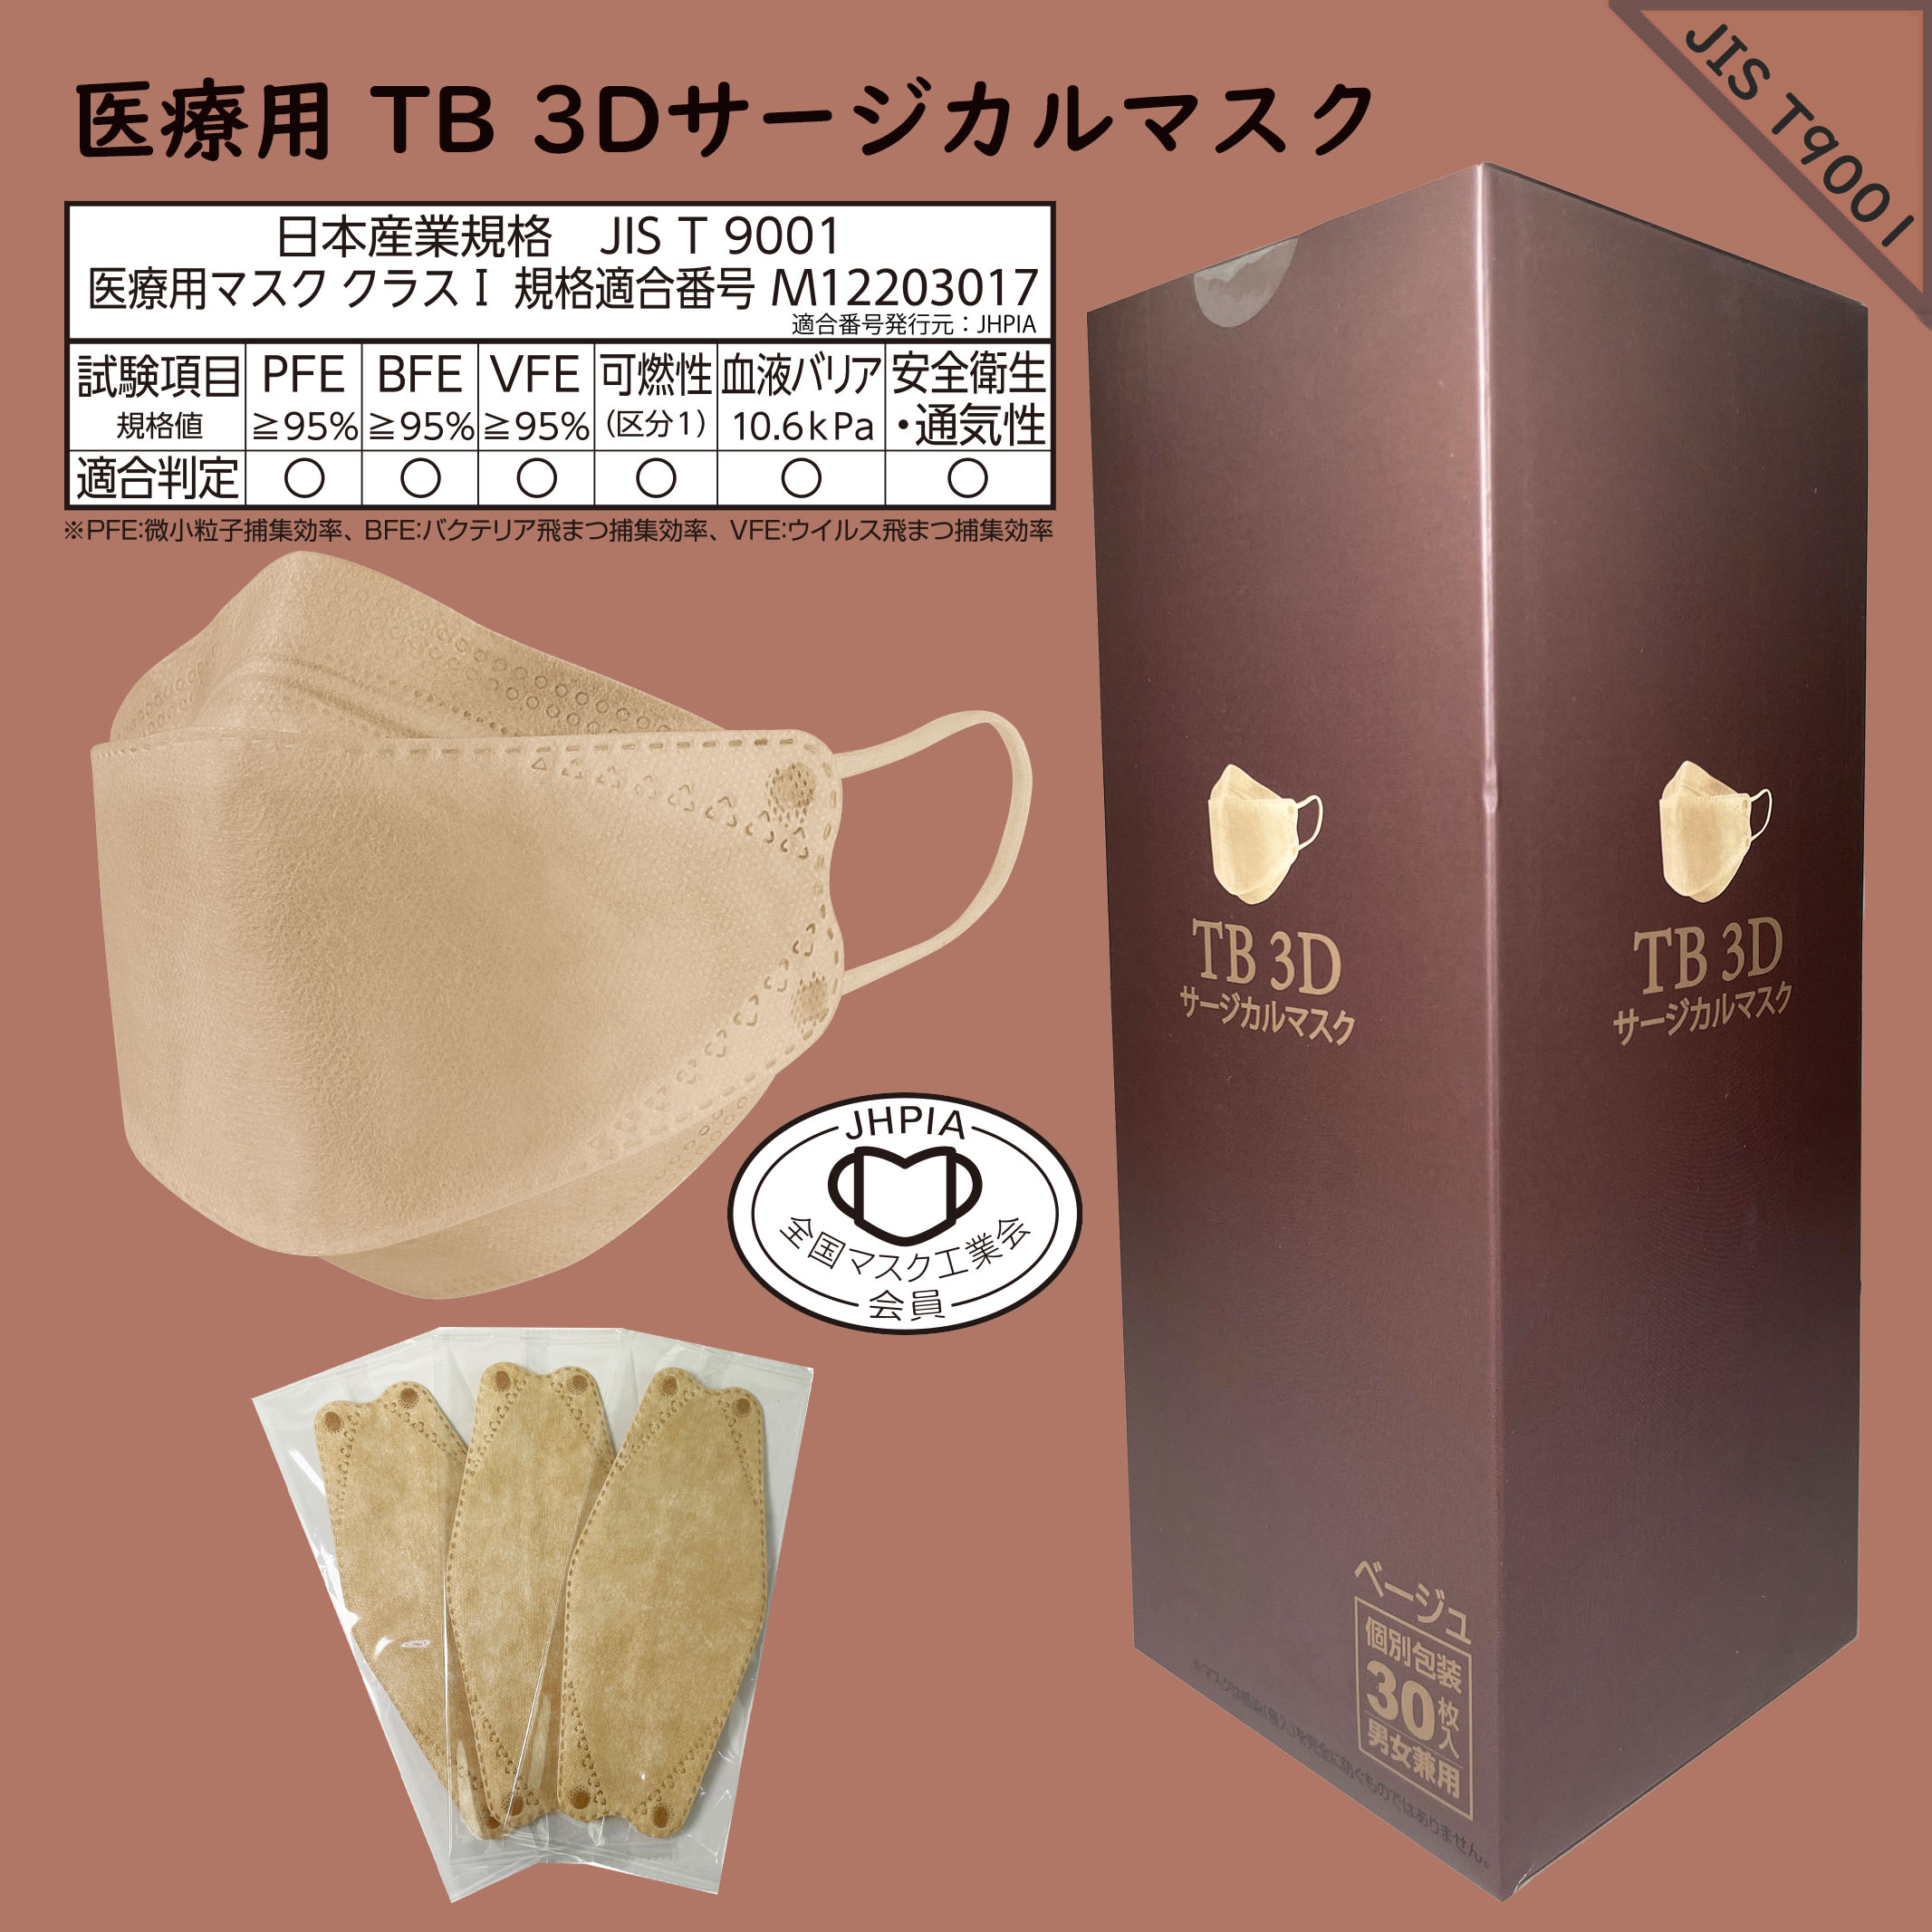 つばさ(Tsubasa) TB 3Dサージカルマスク・個包装・3層構造 (JIS T9001適合審査合格品) 医療用立体マスク ベージュ/フリーサイズ 1BOX-30枚入り